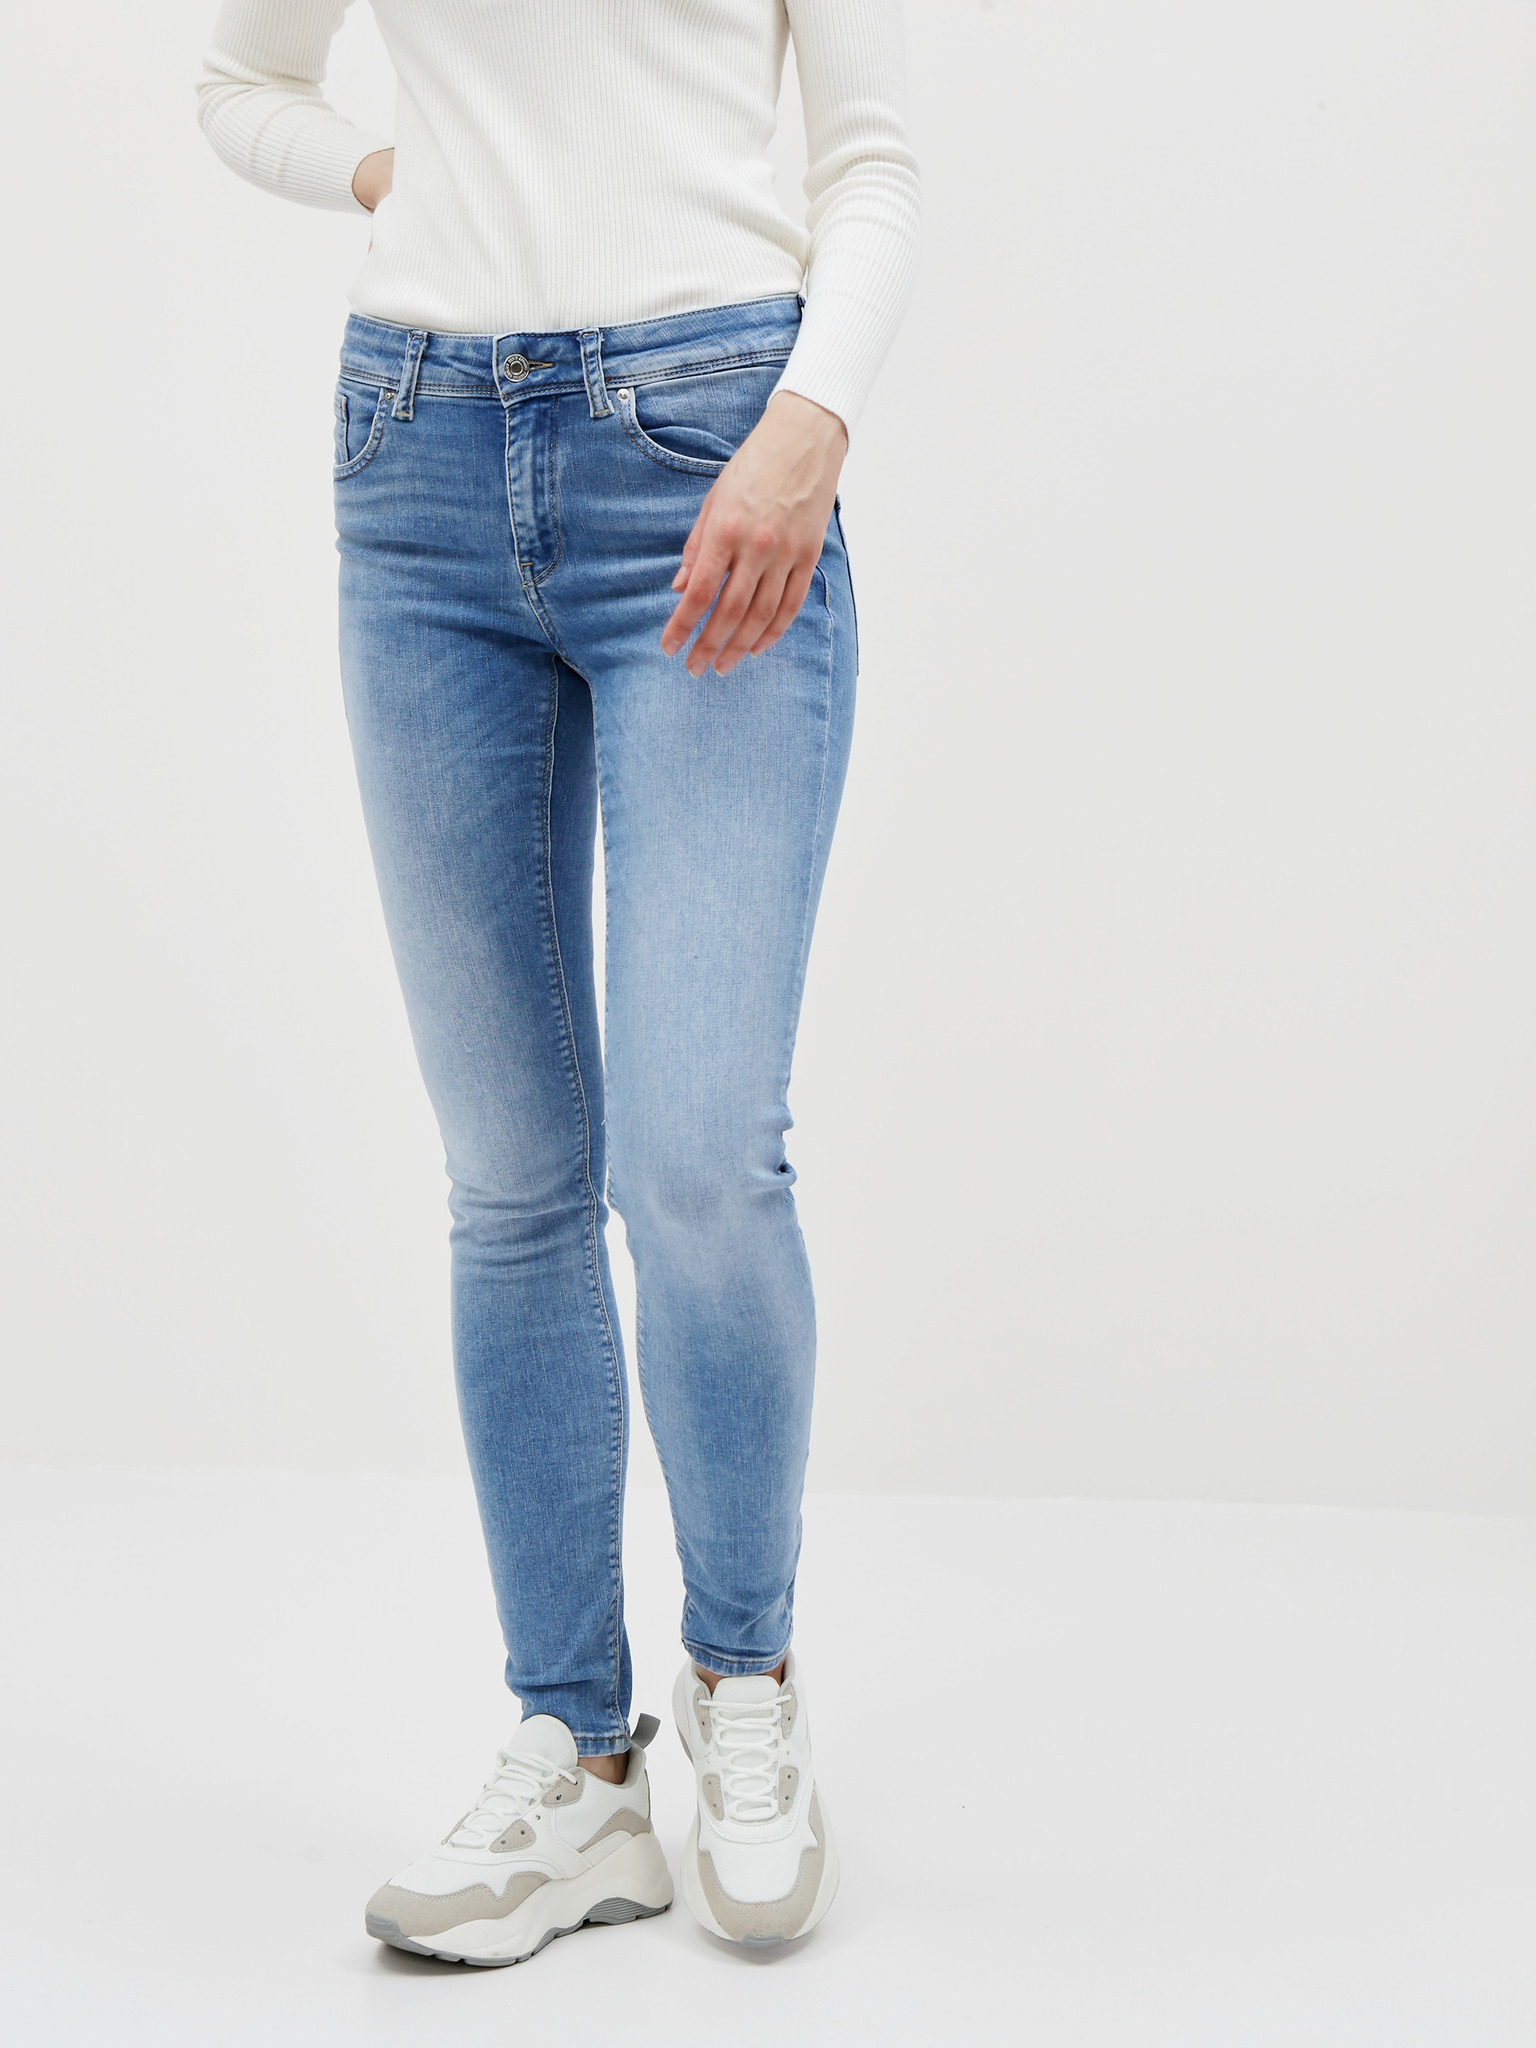 Lux Jeans Vero Moda